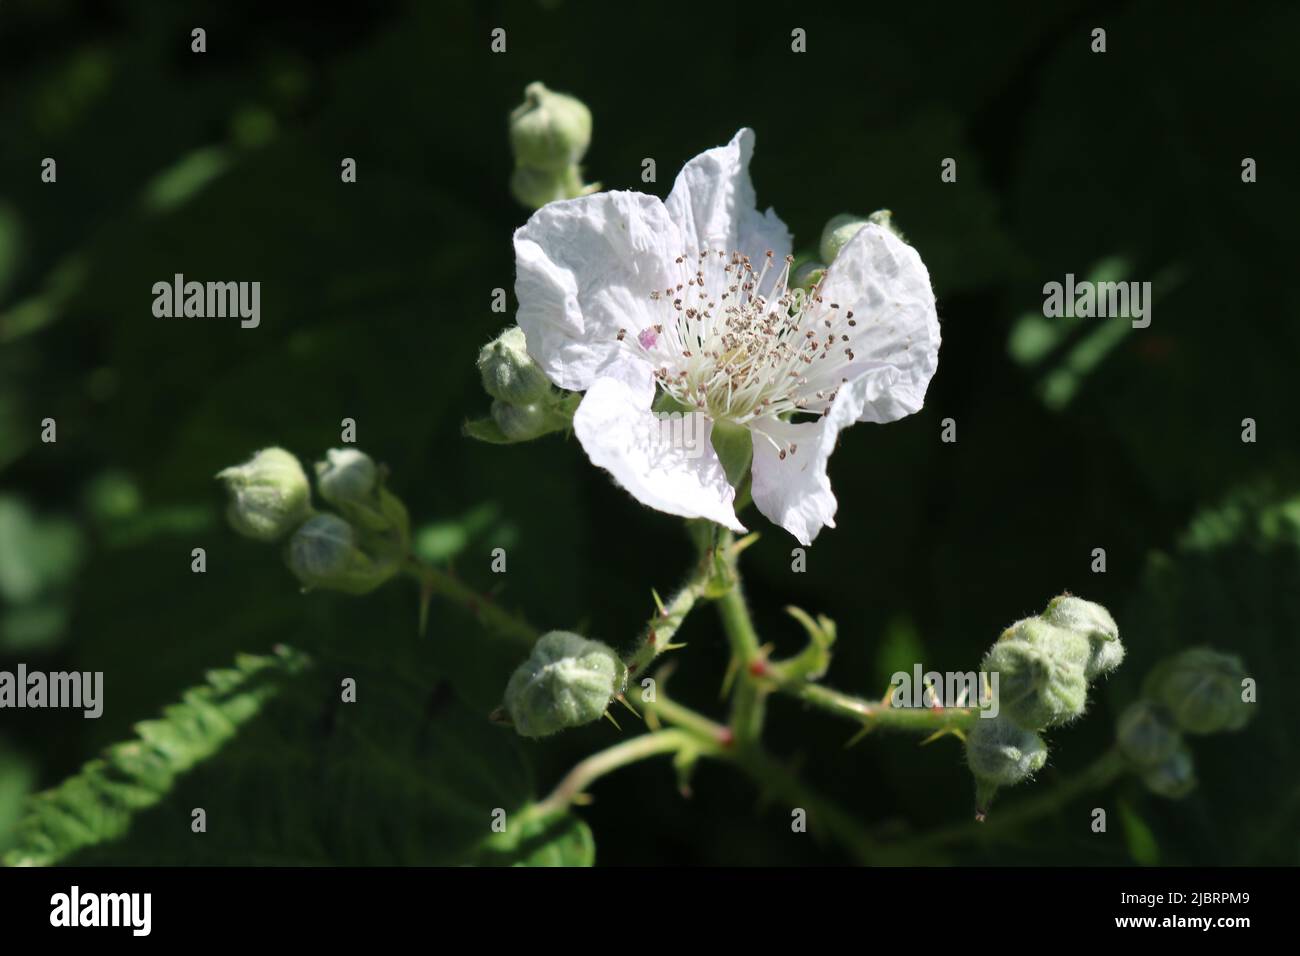 Flowering blackberry bush Stock Photo